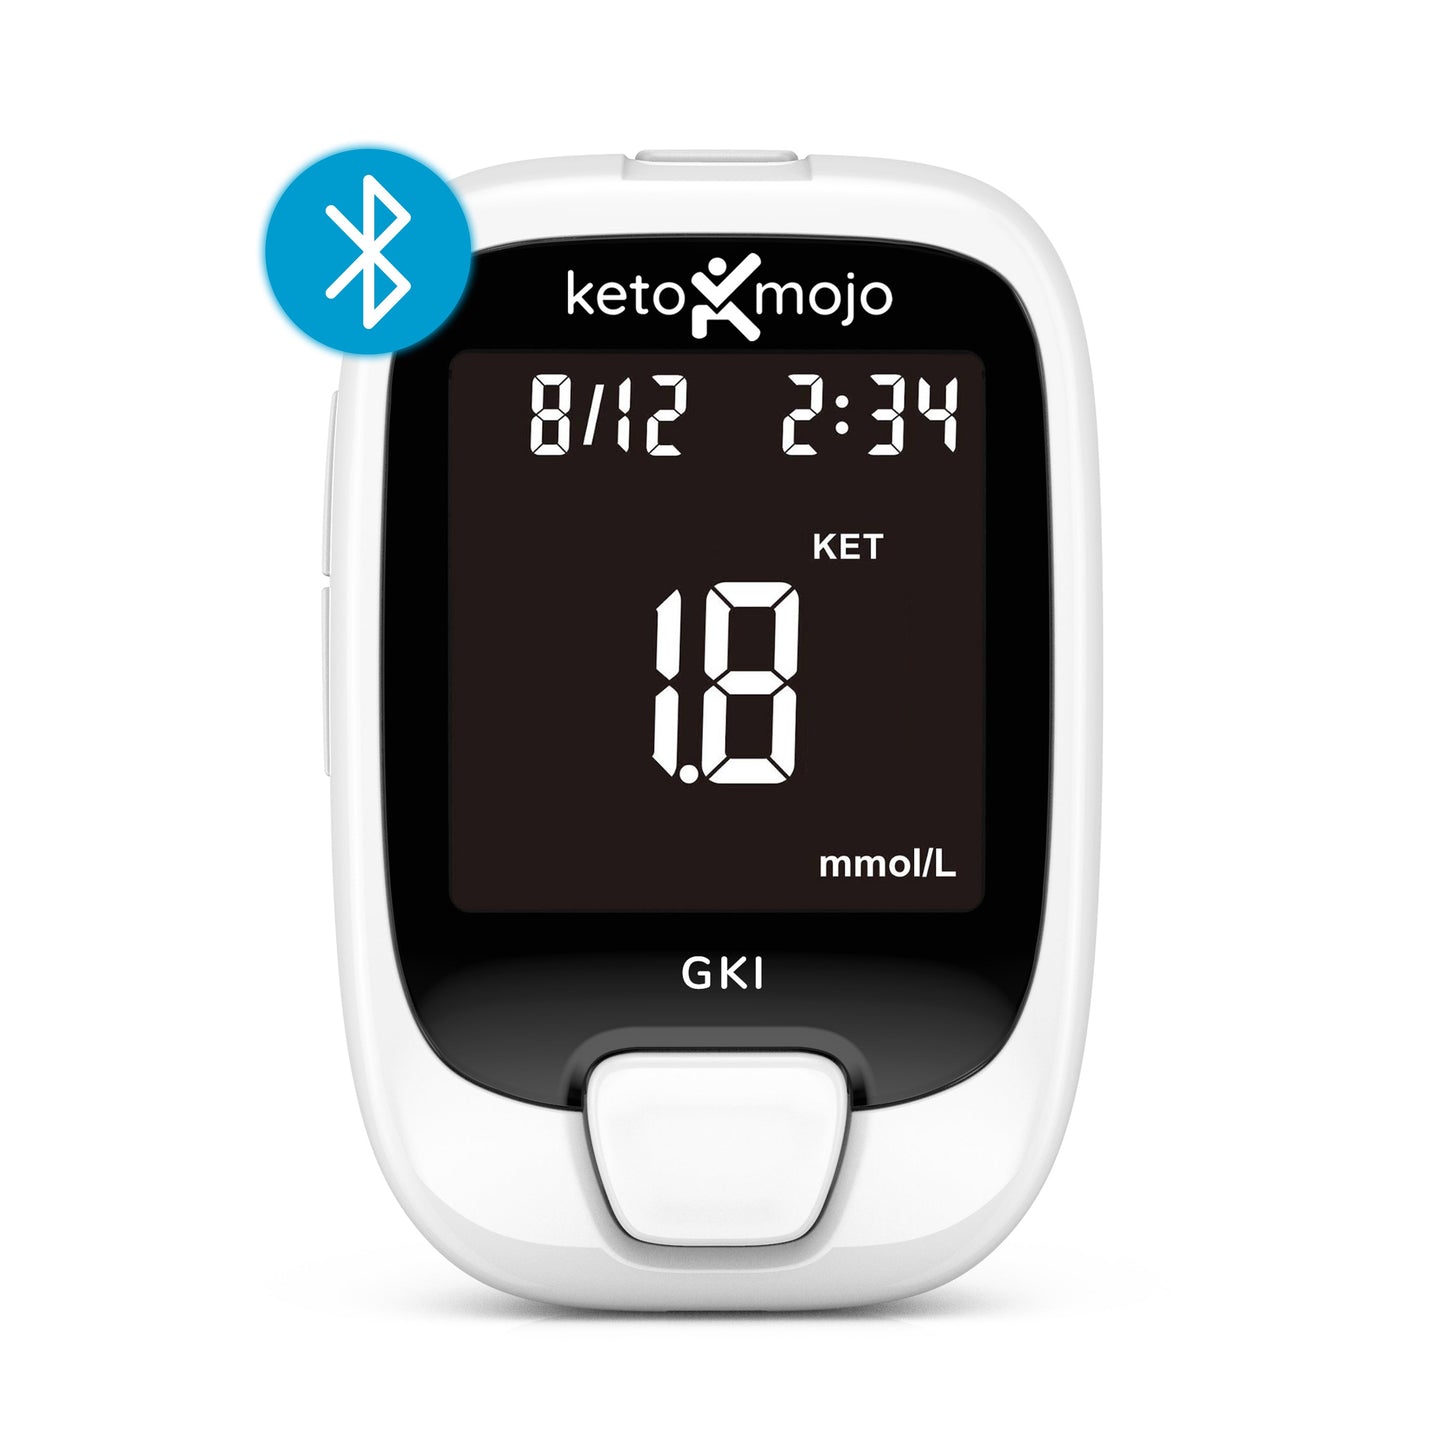 GKI-Bluetooth Blood Glucose & Ketone Meter - BASIC STARTER KIT (mmol)